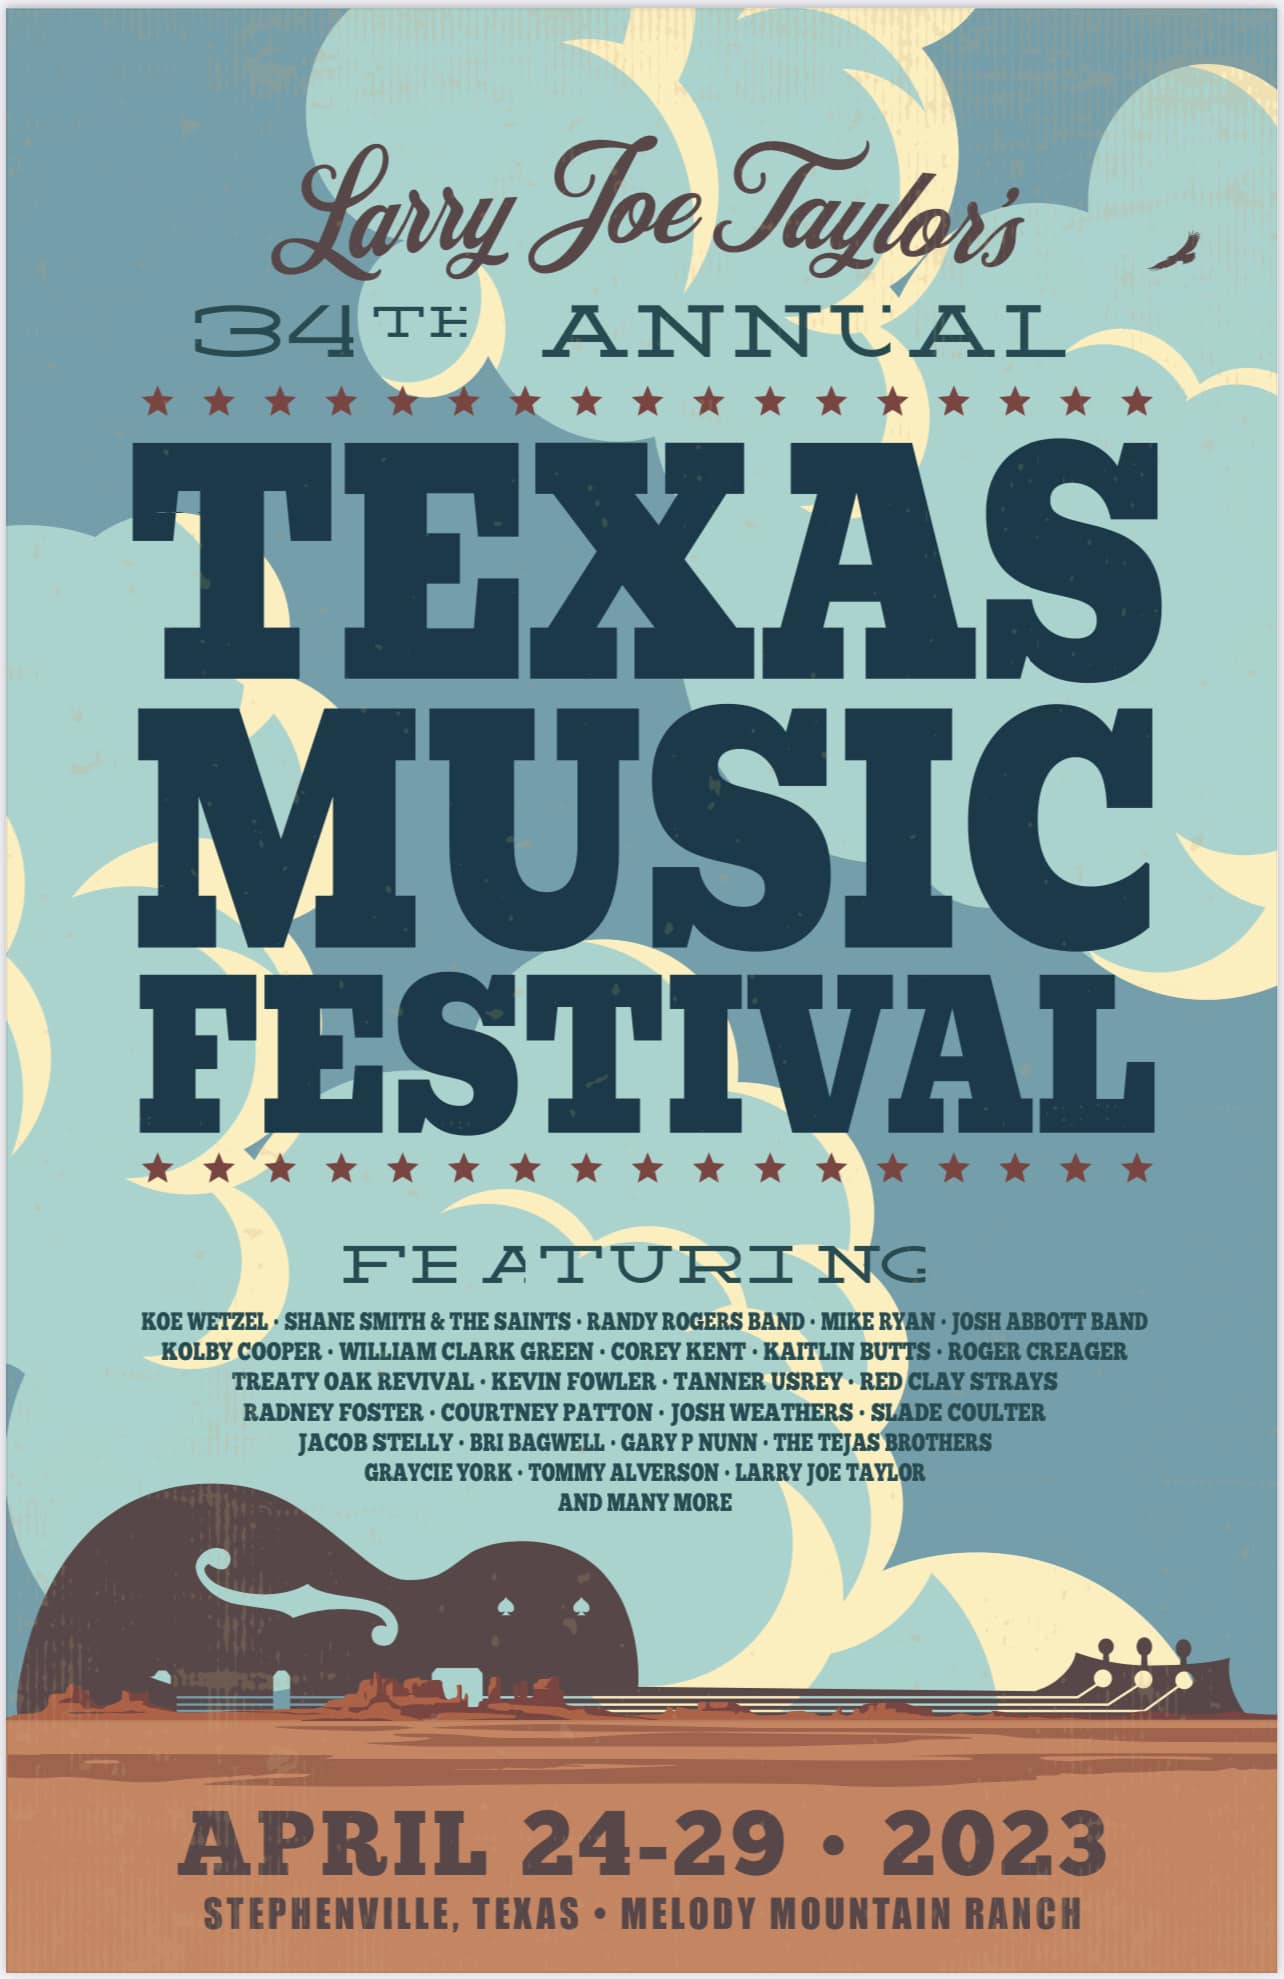 LJT Texas Music Festival Stephenville Tourism and Visitors Bureau